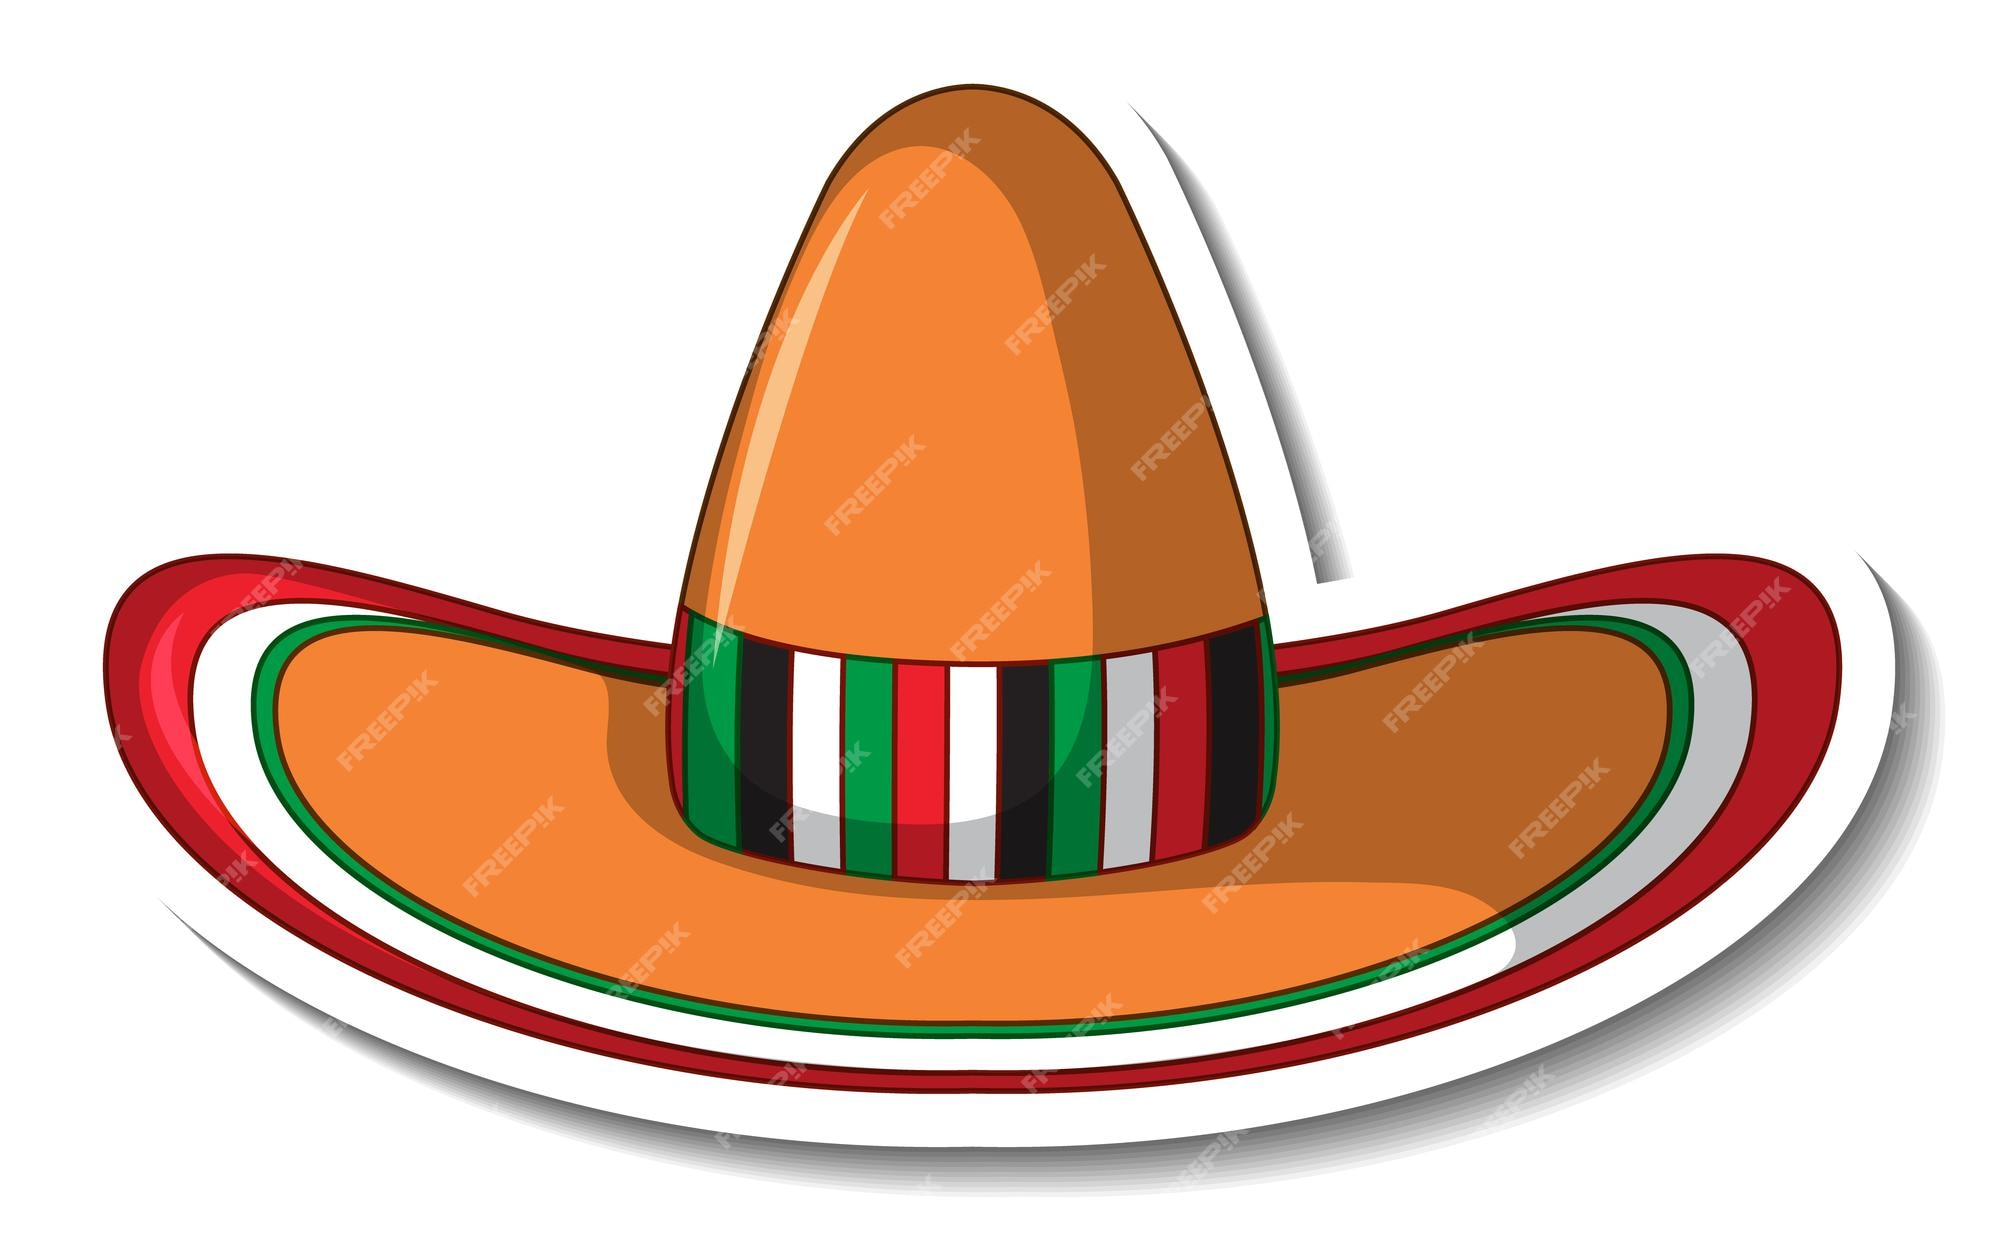 Imágenes de Sombrero Mexicano - Descarga gratuita en Freepik